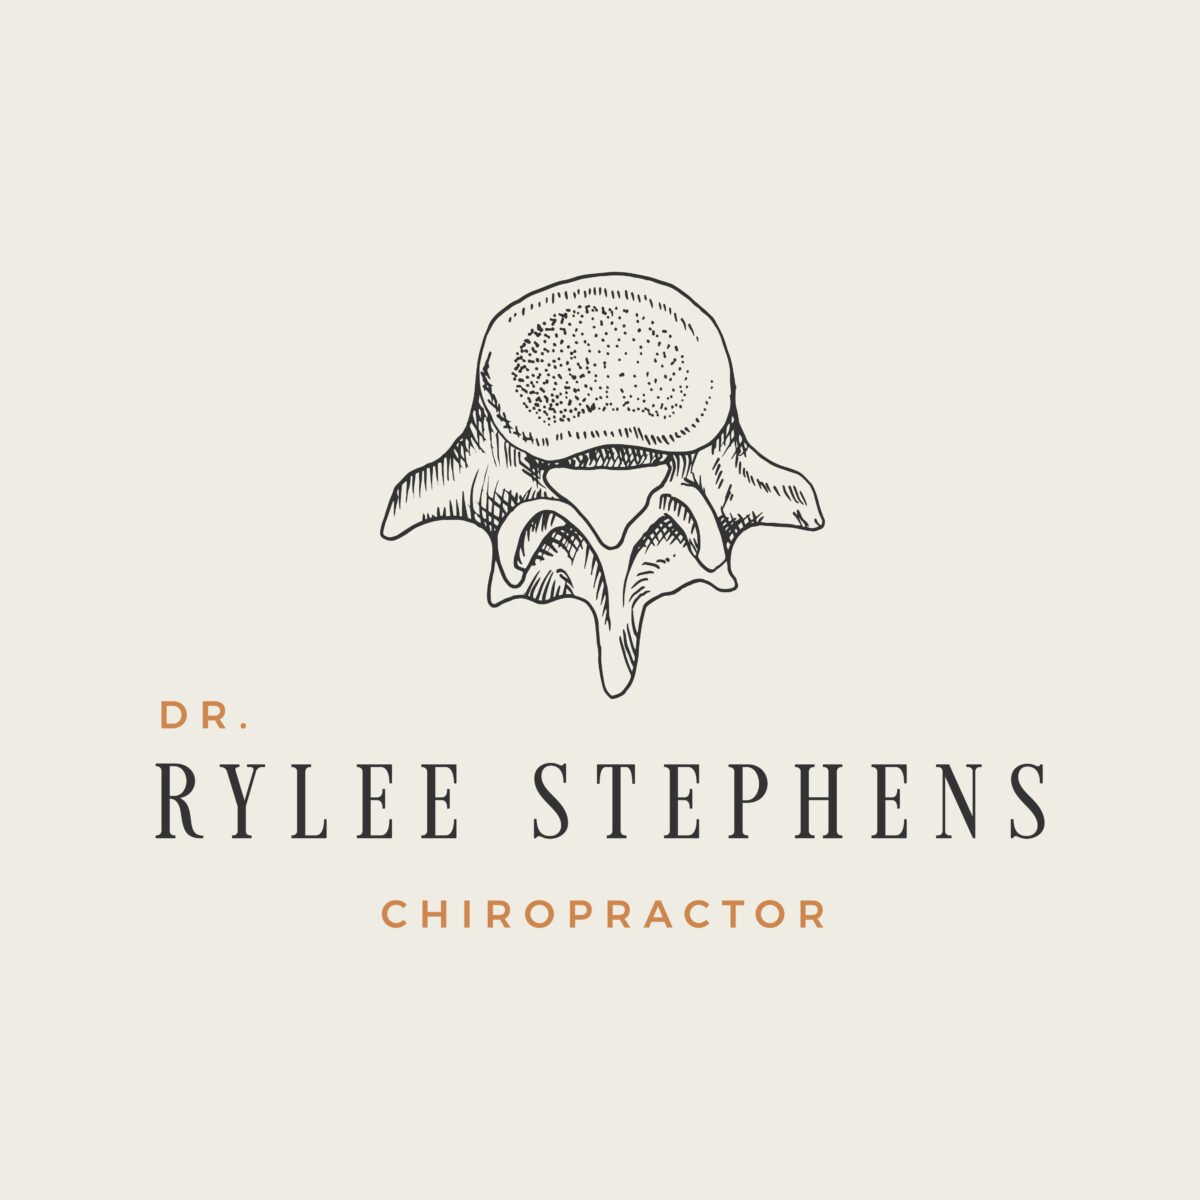 lindsay-mcghee-designs-rylee-stephens-chiropractor-Logo-Beige-Cedarwood